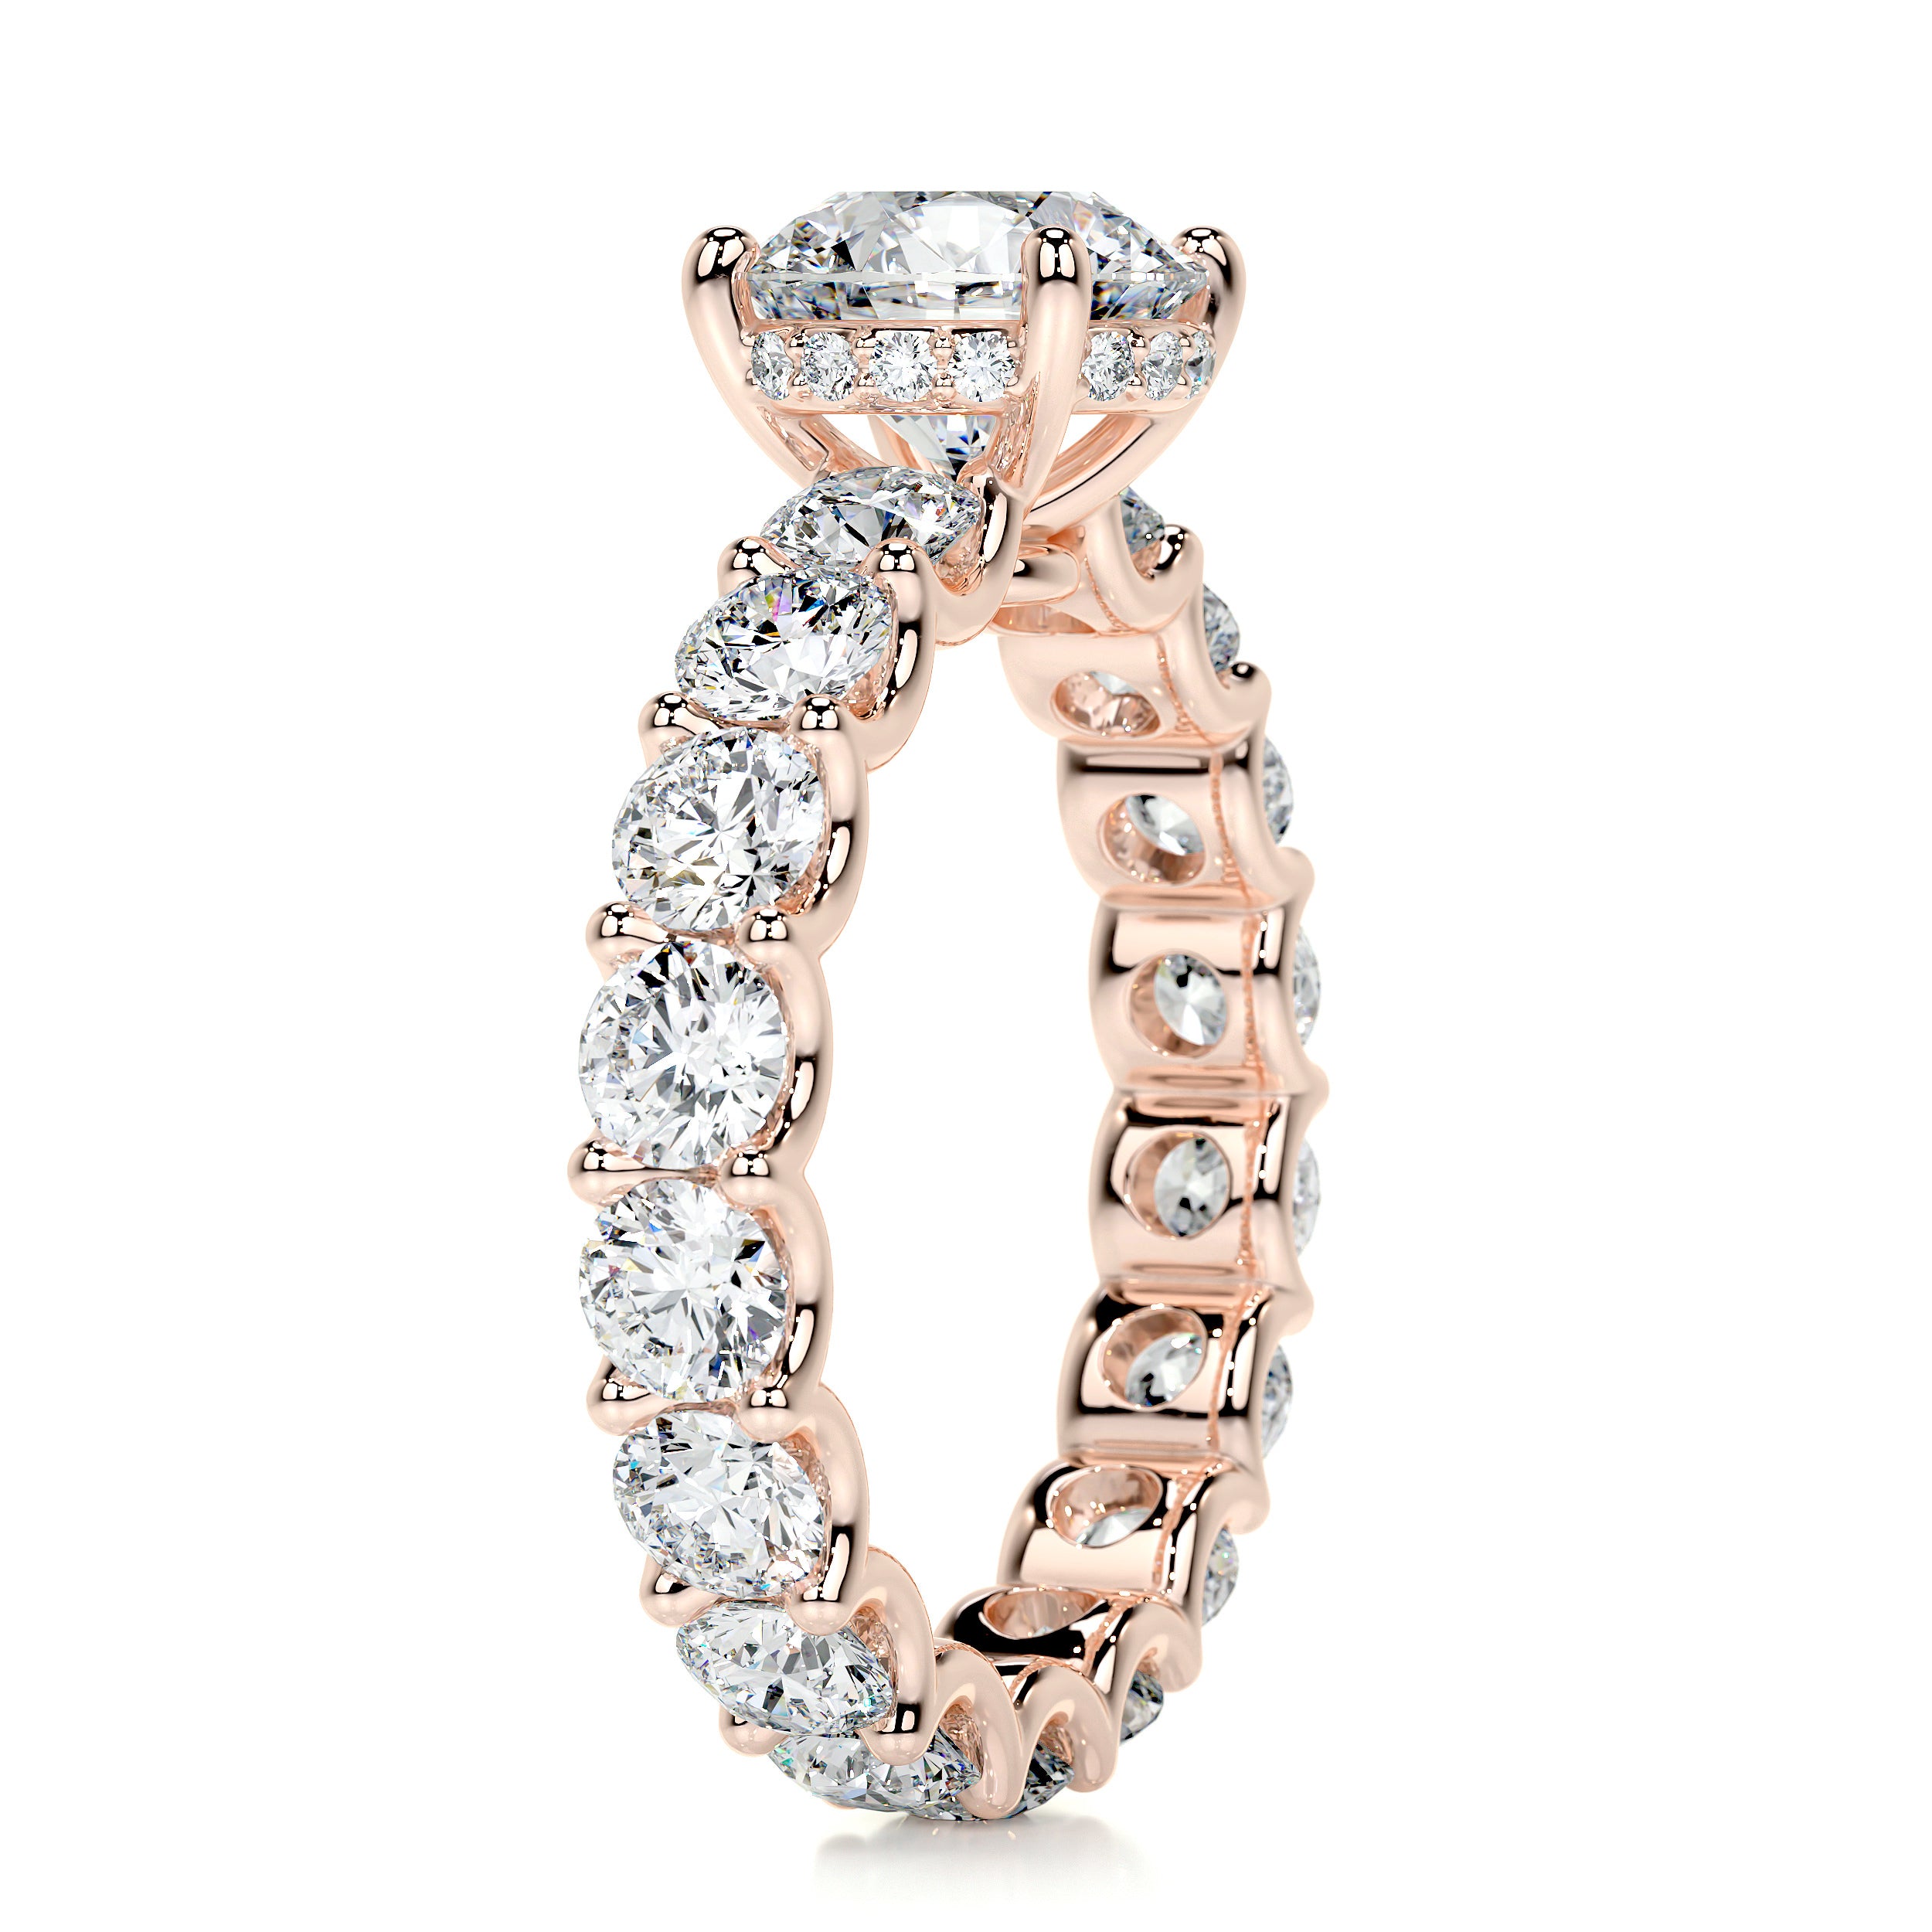 Lola Diamond Engagement Ring   (3.25 Carat) -14K Rose Gold